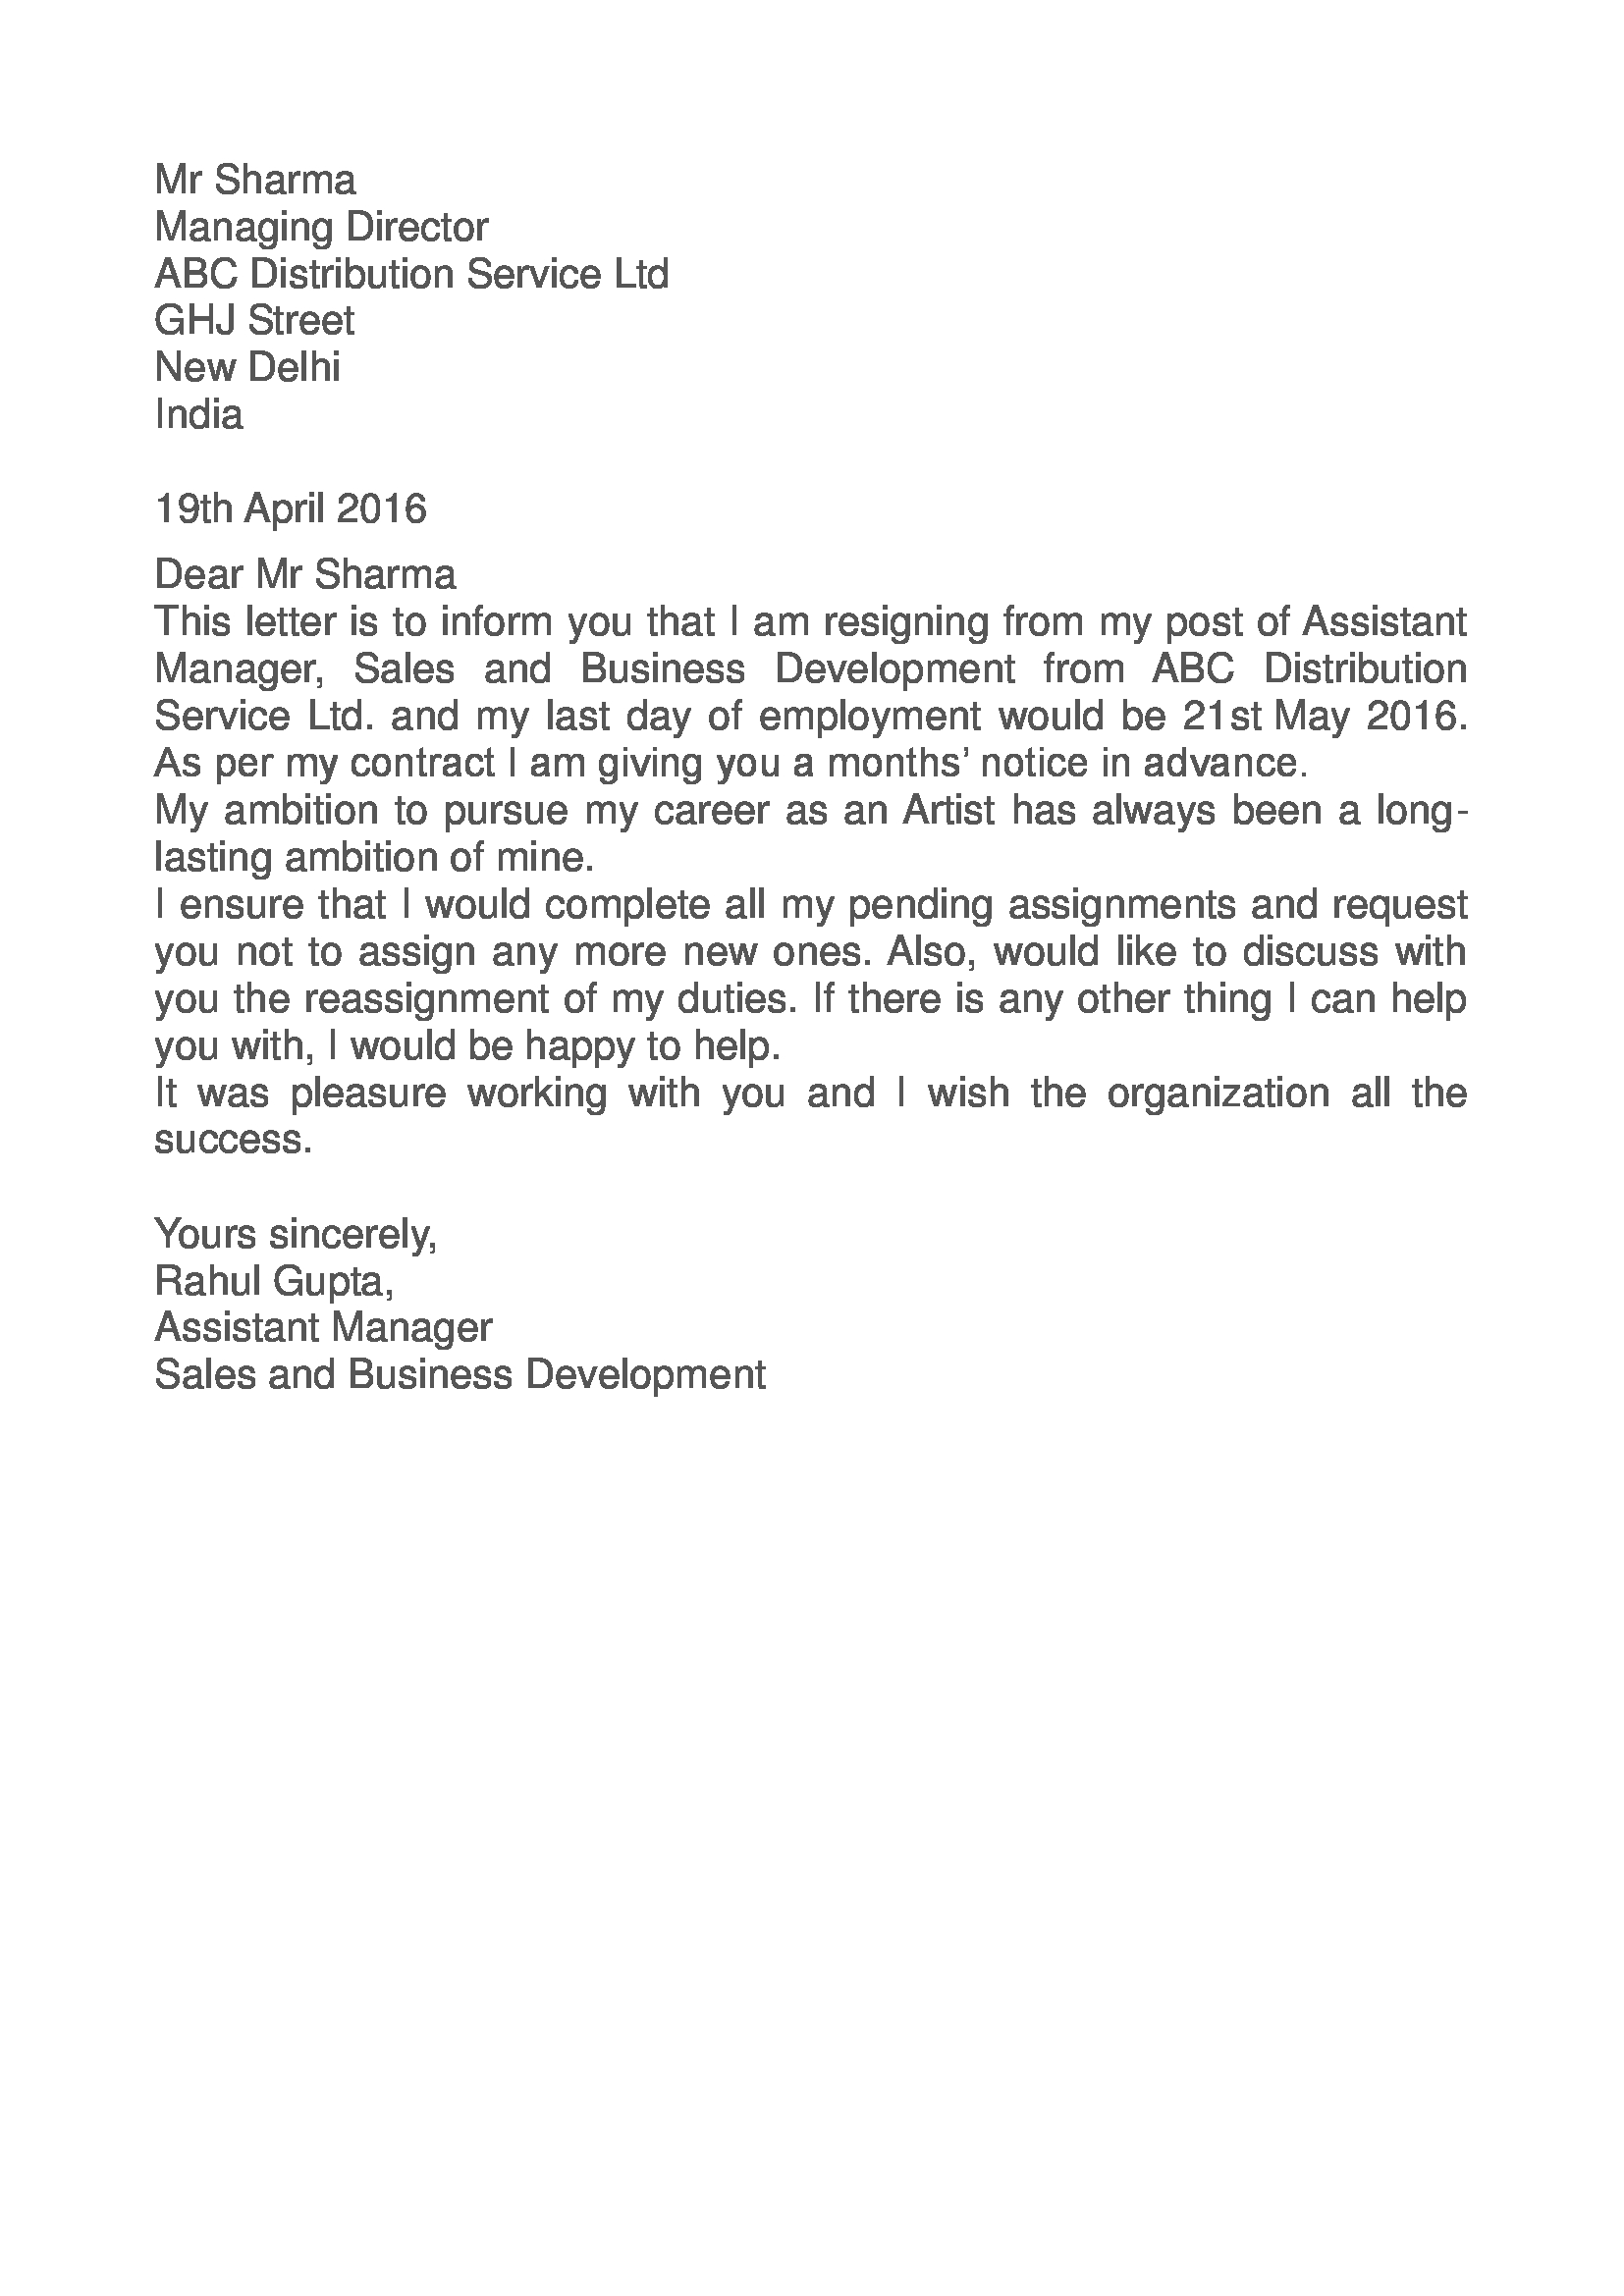 View 24 Resignation Letter Sample For Hotel Job